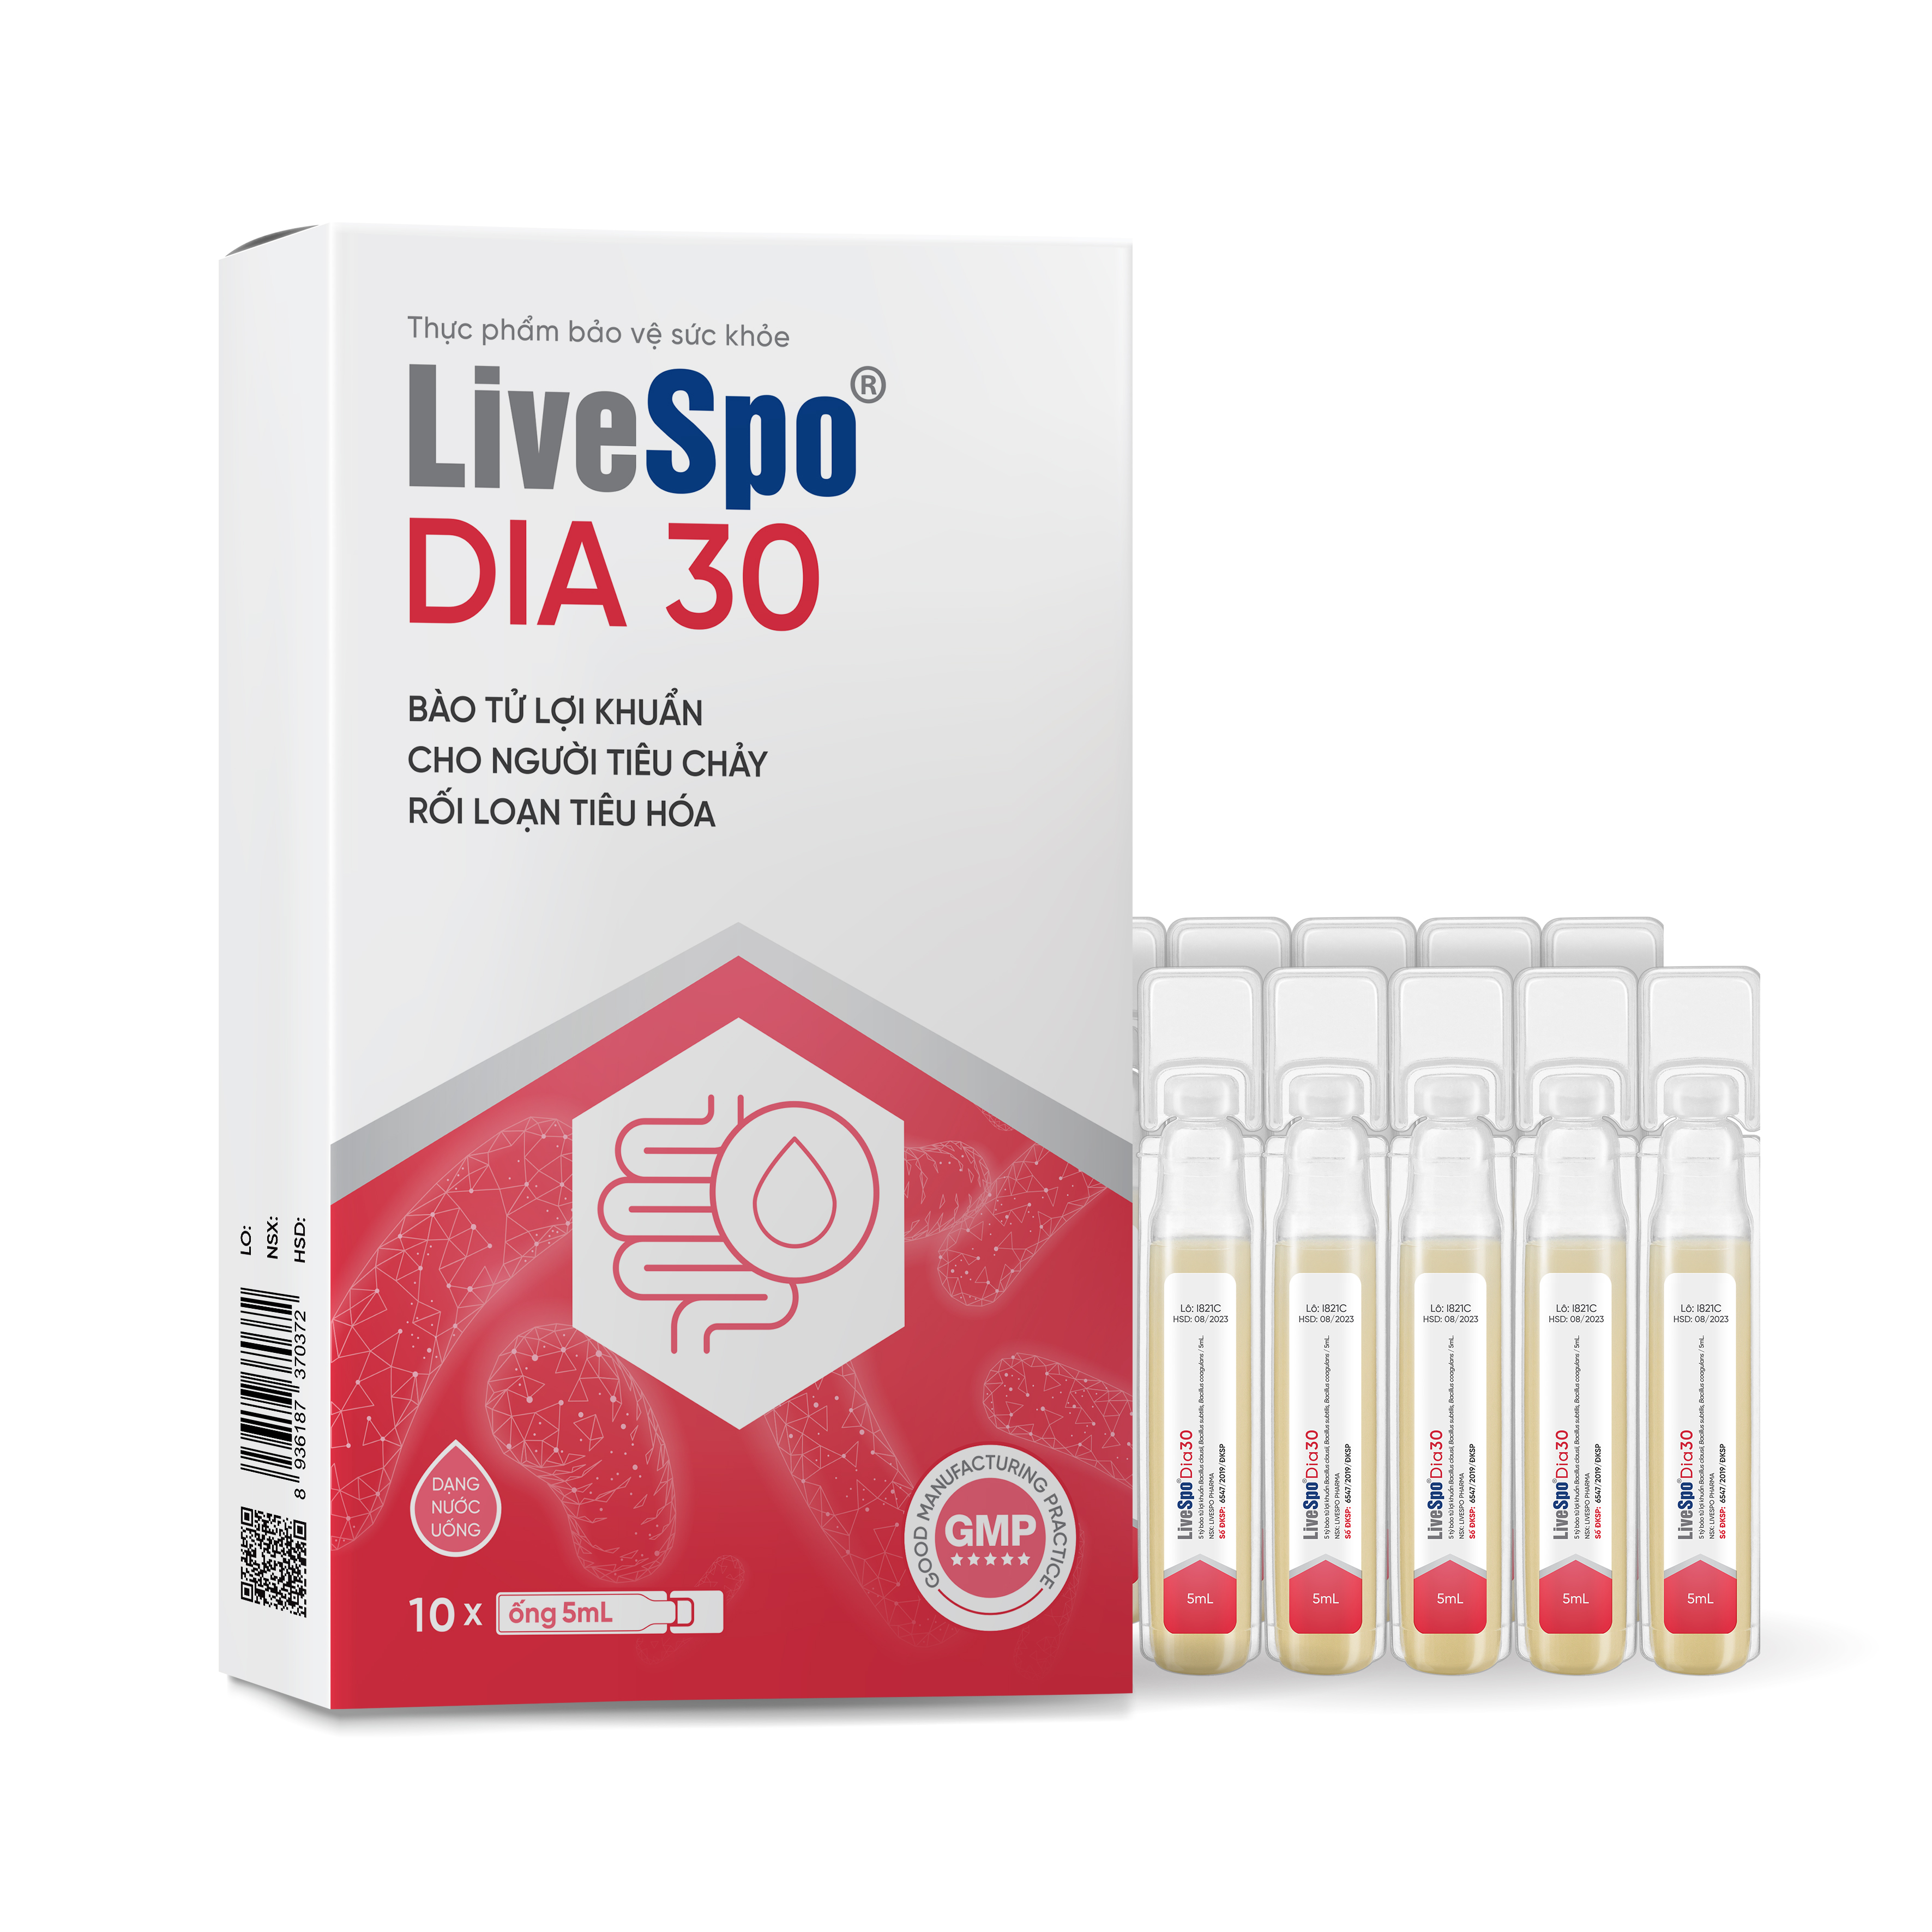 LiveSpo DIA 30 - Bào Tử Lợi Khuẩn Làm Giảm Triệu Chứng Tiêu Chảy Cấp Hộp